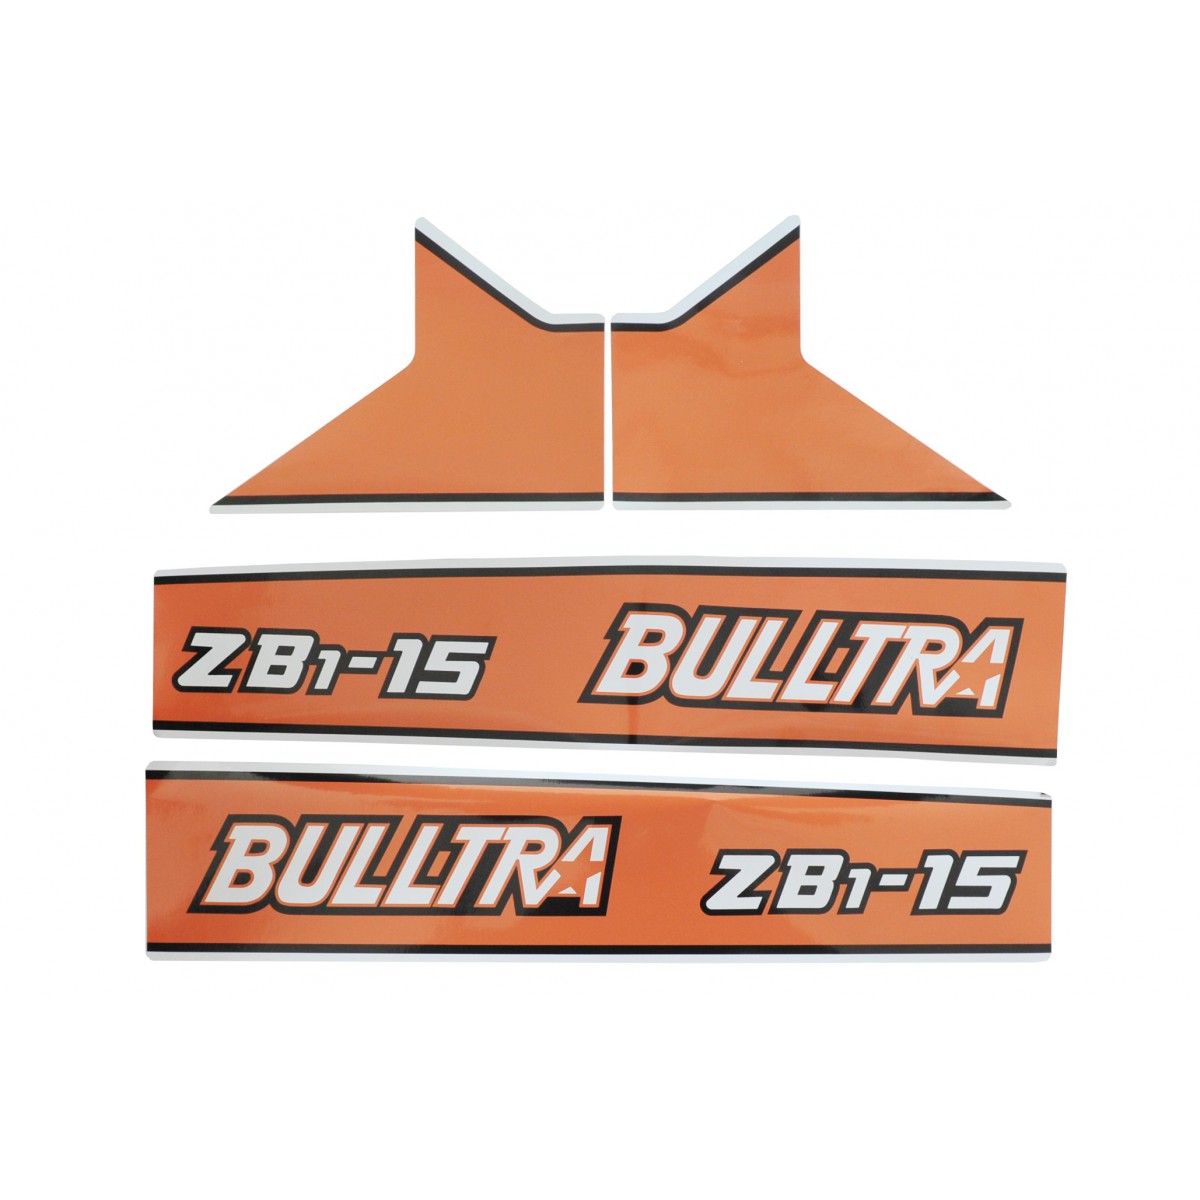 Kubota Bulltra B1-15, ZB1-15 stickers